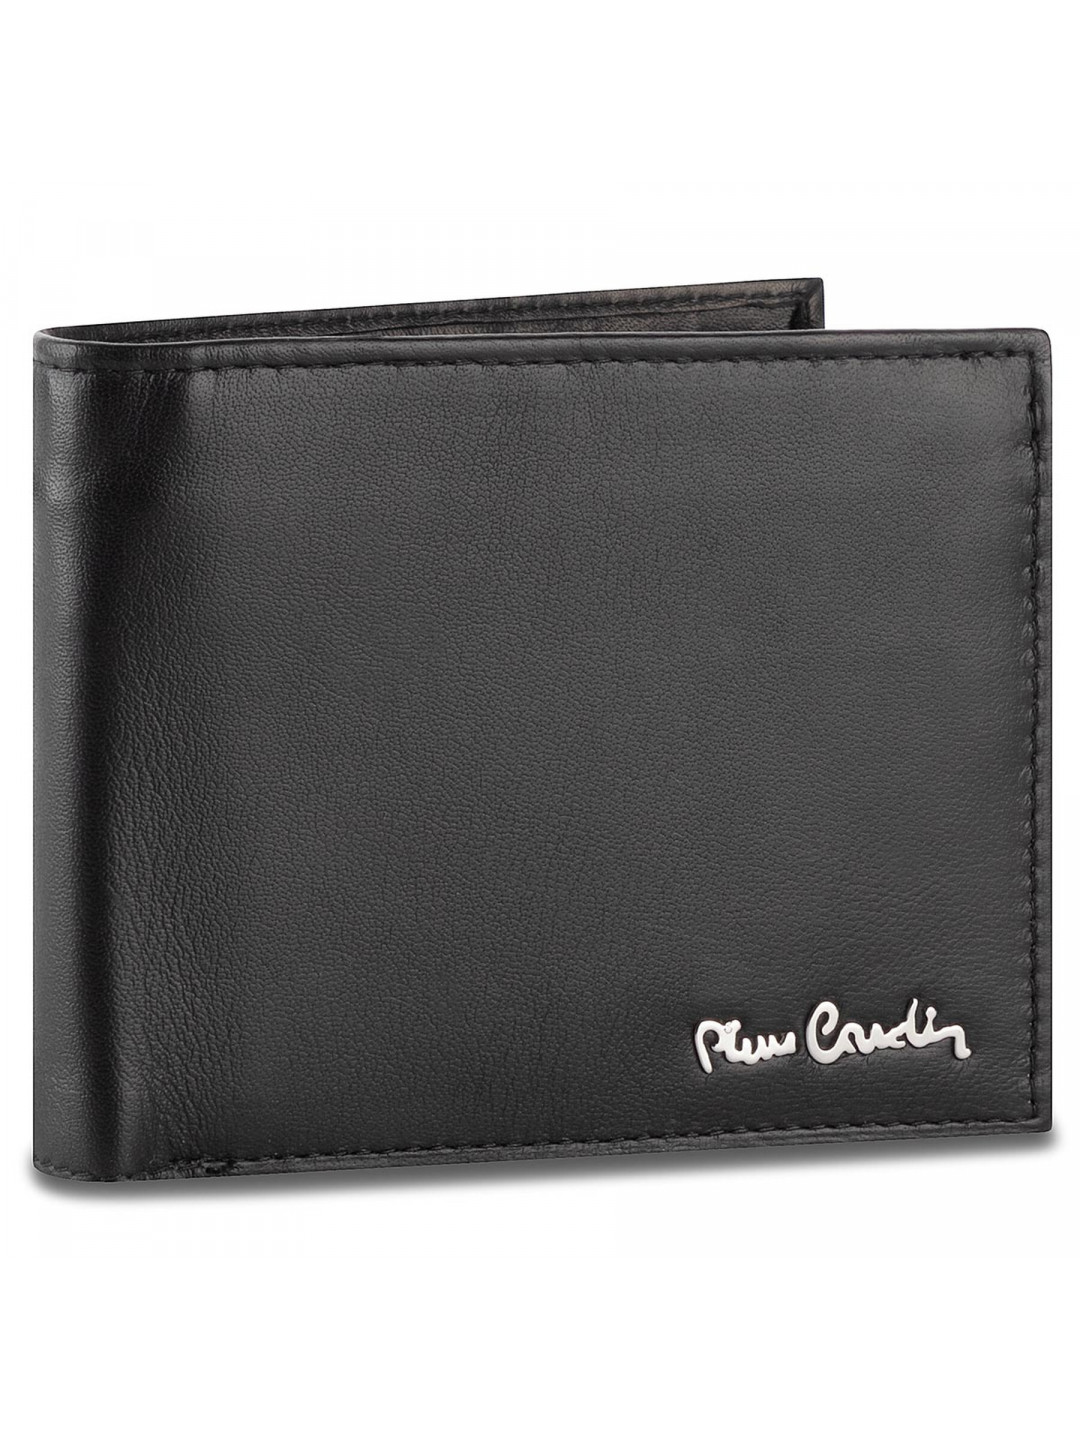 Velká pánská peněženka Pierre Cardin